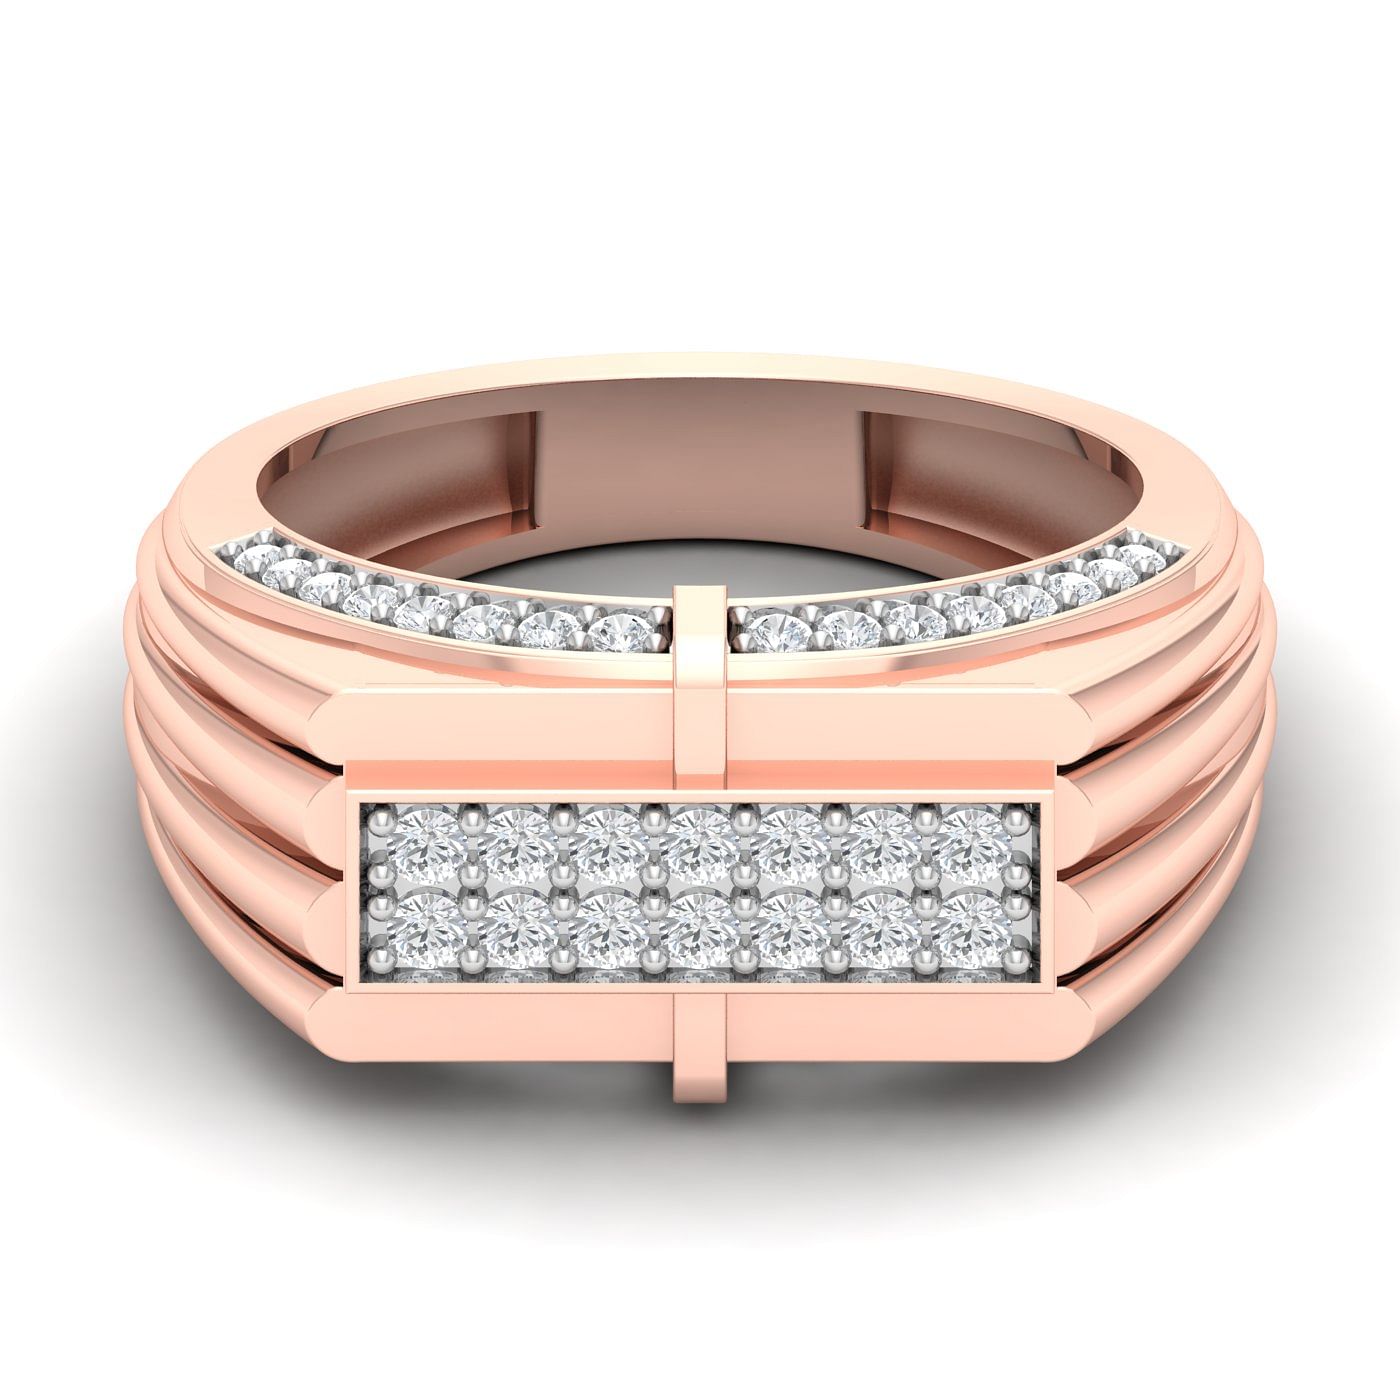 Rose Gold Mohan Diamond Wedding Ring For Men